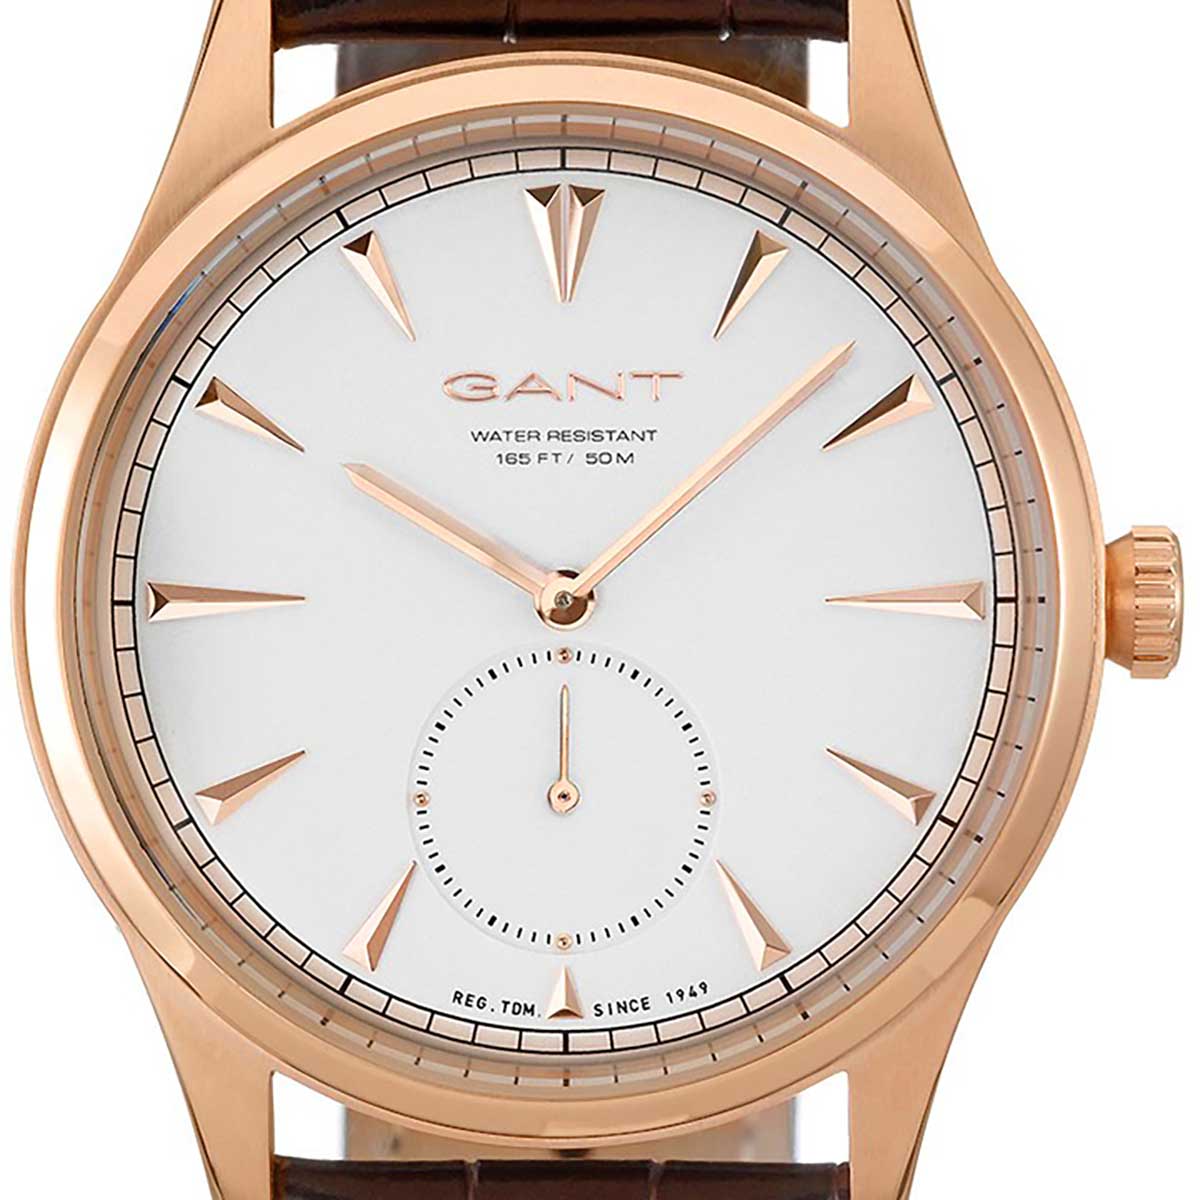 コンビニ受取対応商品 Gant ガント 電池式クォーツ 腕時計 W 並行輸入品 8号店 限定価格セール Cverano Edu Ec